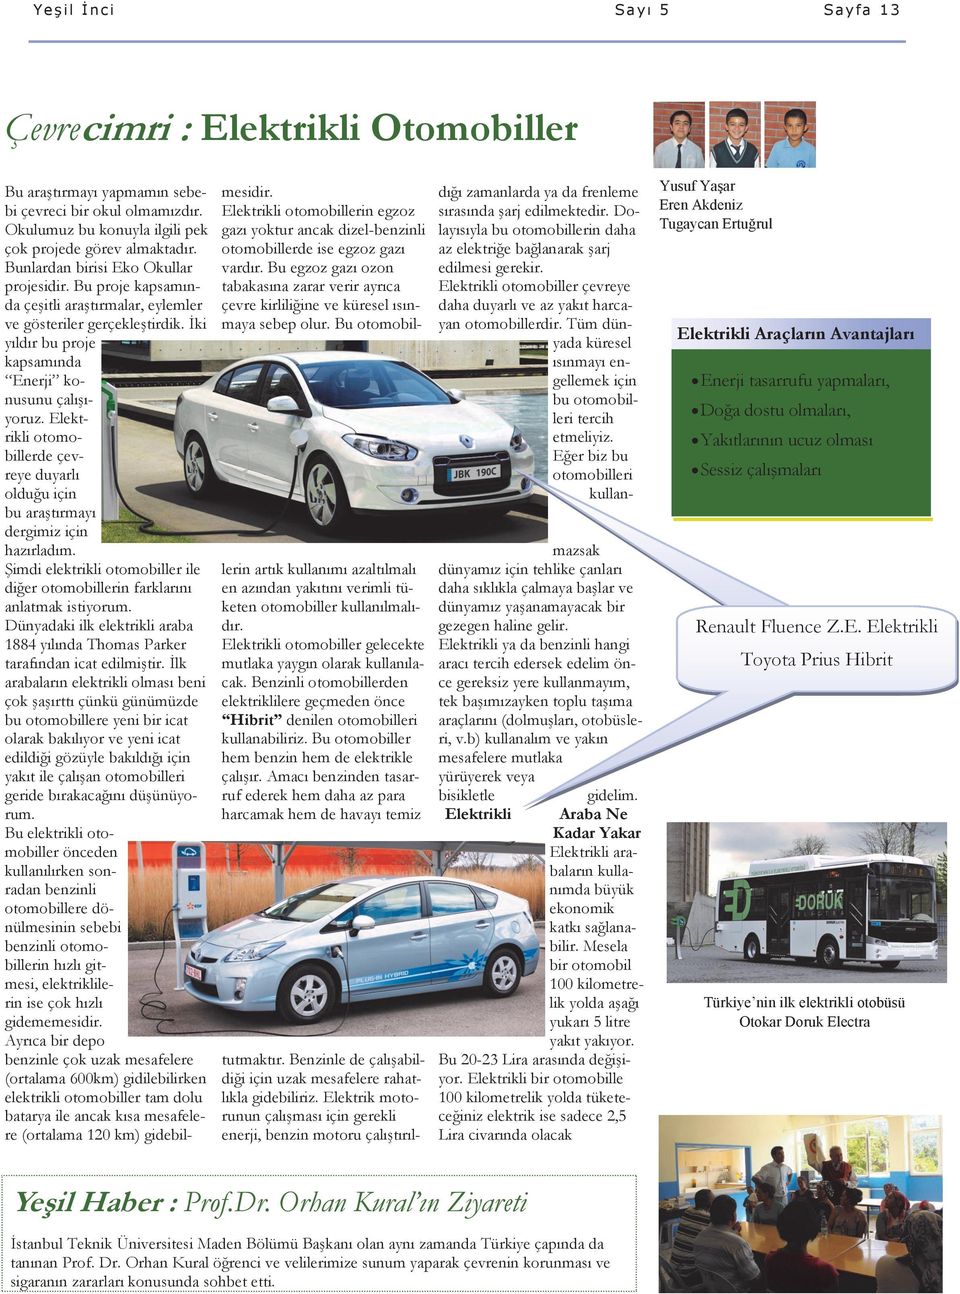 Elektrikli otomobillerde çevreye duyarlı olduğu için bu araştırmayı dergimiz için hazırladım. Şimdi elektrikli otomobiller ile diğer otomobillerin farklarını anlatmak istiyorum.